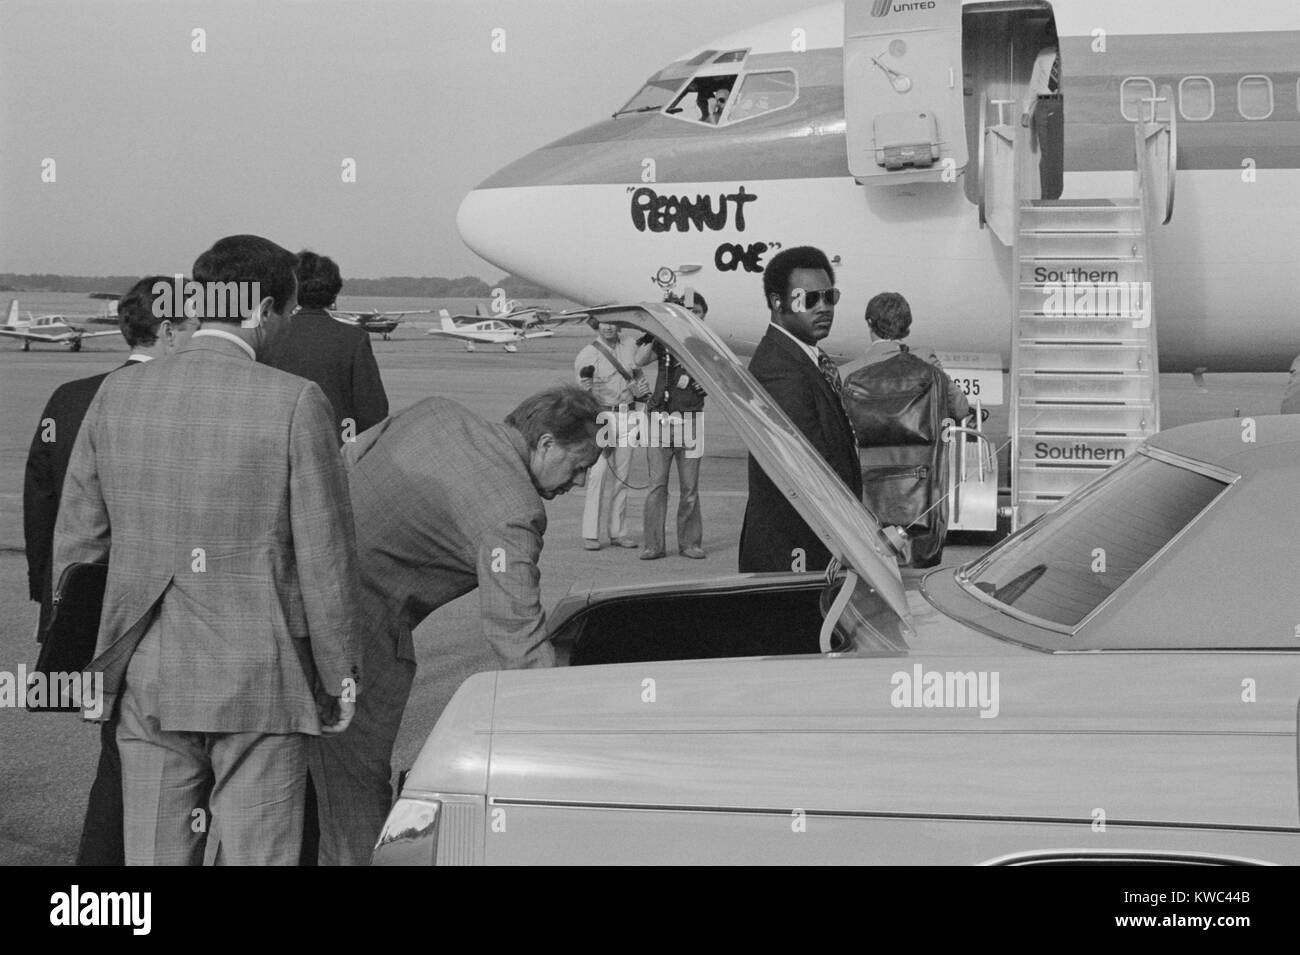 Jimmy Carter per recuperare il suo bagaglio da una vettura prima di salire a bordo il comando 'arachidi un' aereo di campagna. Carter è apparso come un uomo del popolo da trasportare il suo bagaglio quando la campagna elettorale. Sett. 13, 1976. (BSLOC 2015 14 68) Foto Stock